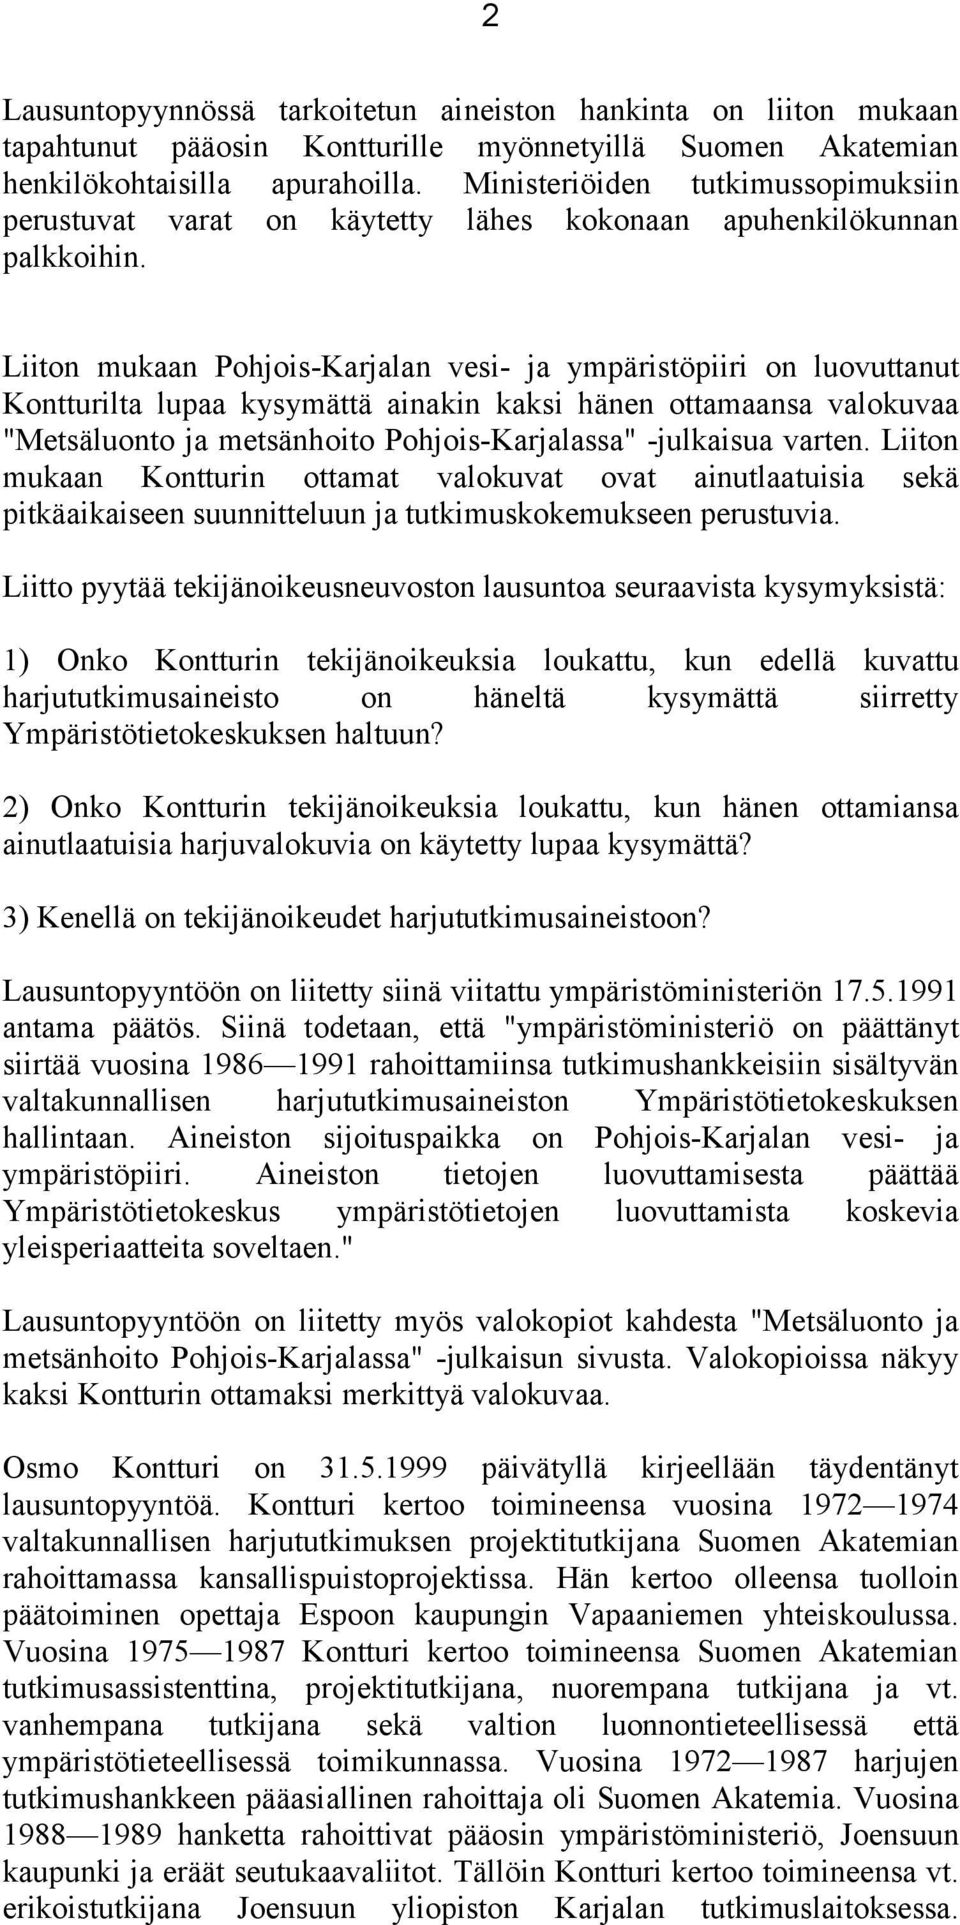 Liiton mukaan Pohjois-Karjalan vesi- ja ympäristöpiiri on luovuttanut Kontturilta lupaa kysymättä ainakin kaksi hänen ottamaansa valokuvaa "Metsäluonto ja metsänhoito Pohjois-Karjalassa" -julkaisua